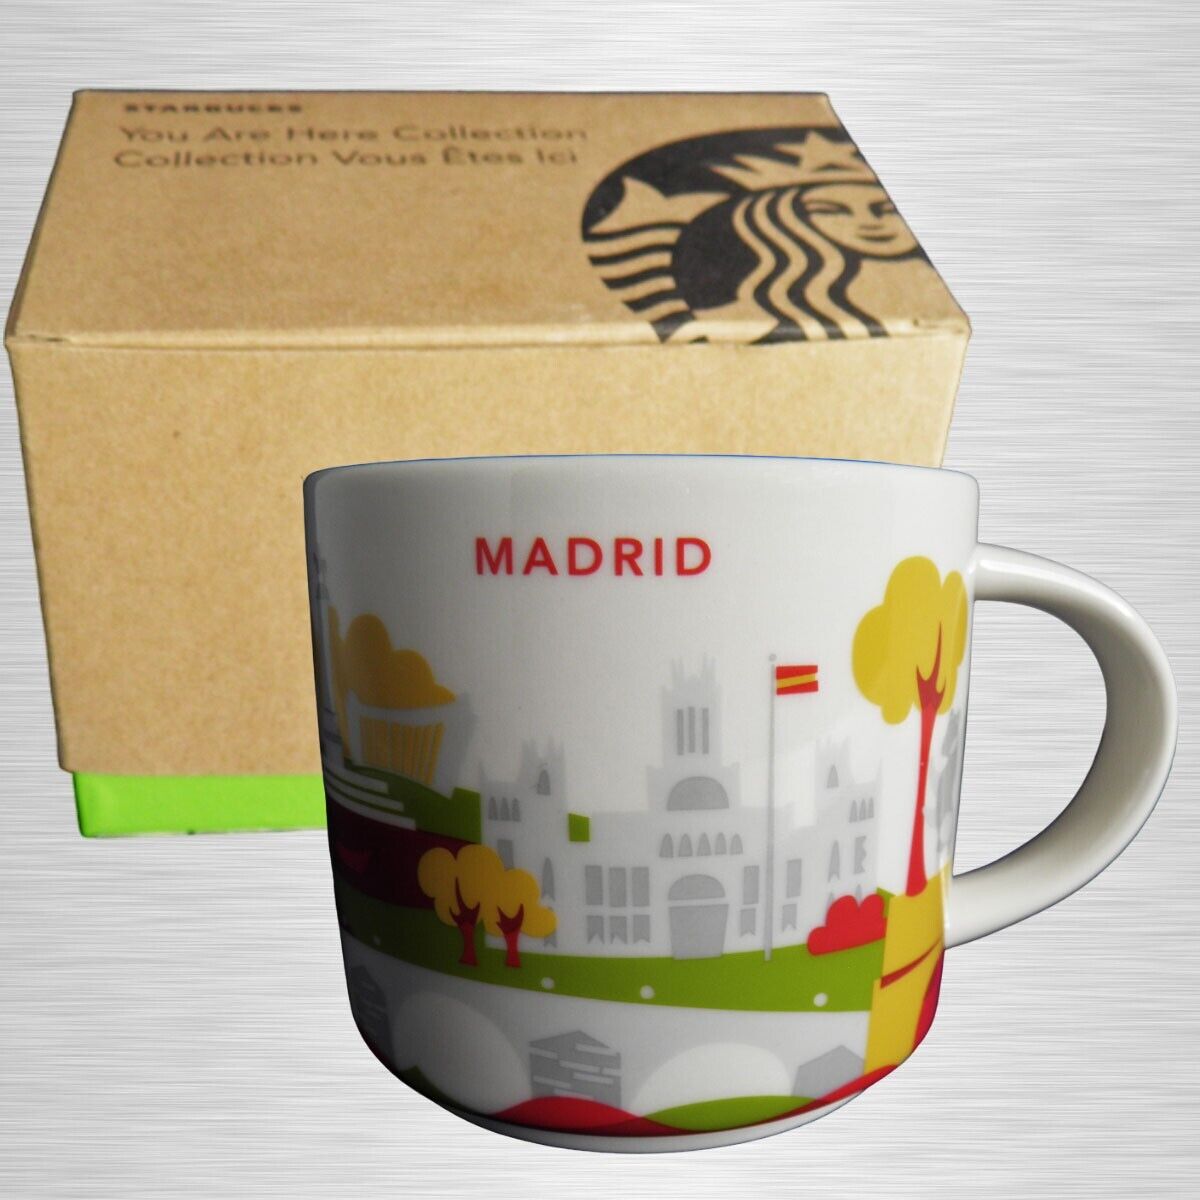 Starbucks® MADRID 14oz Mug - “You are Here” Collection